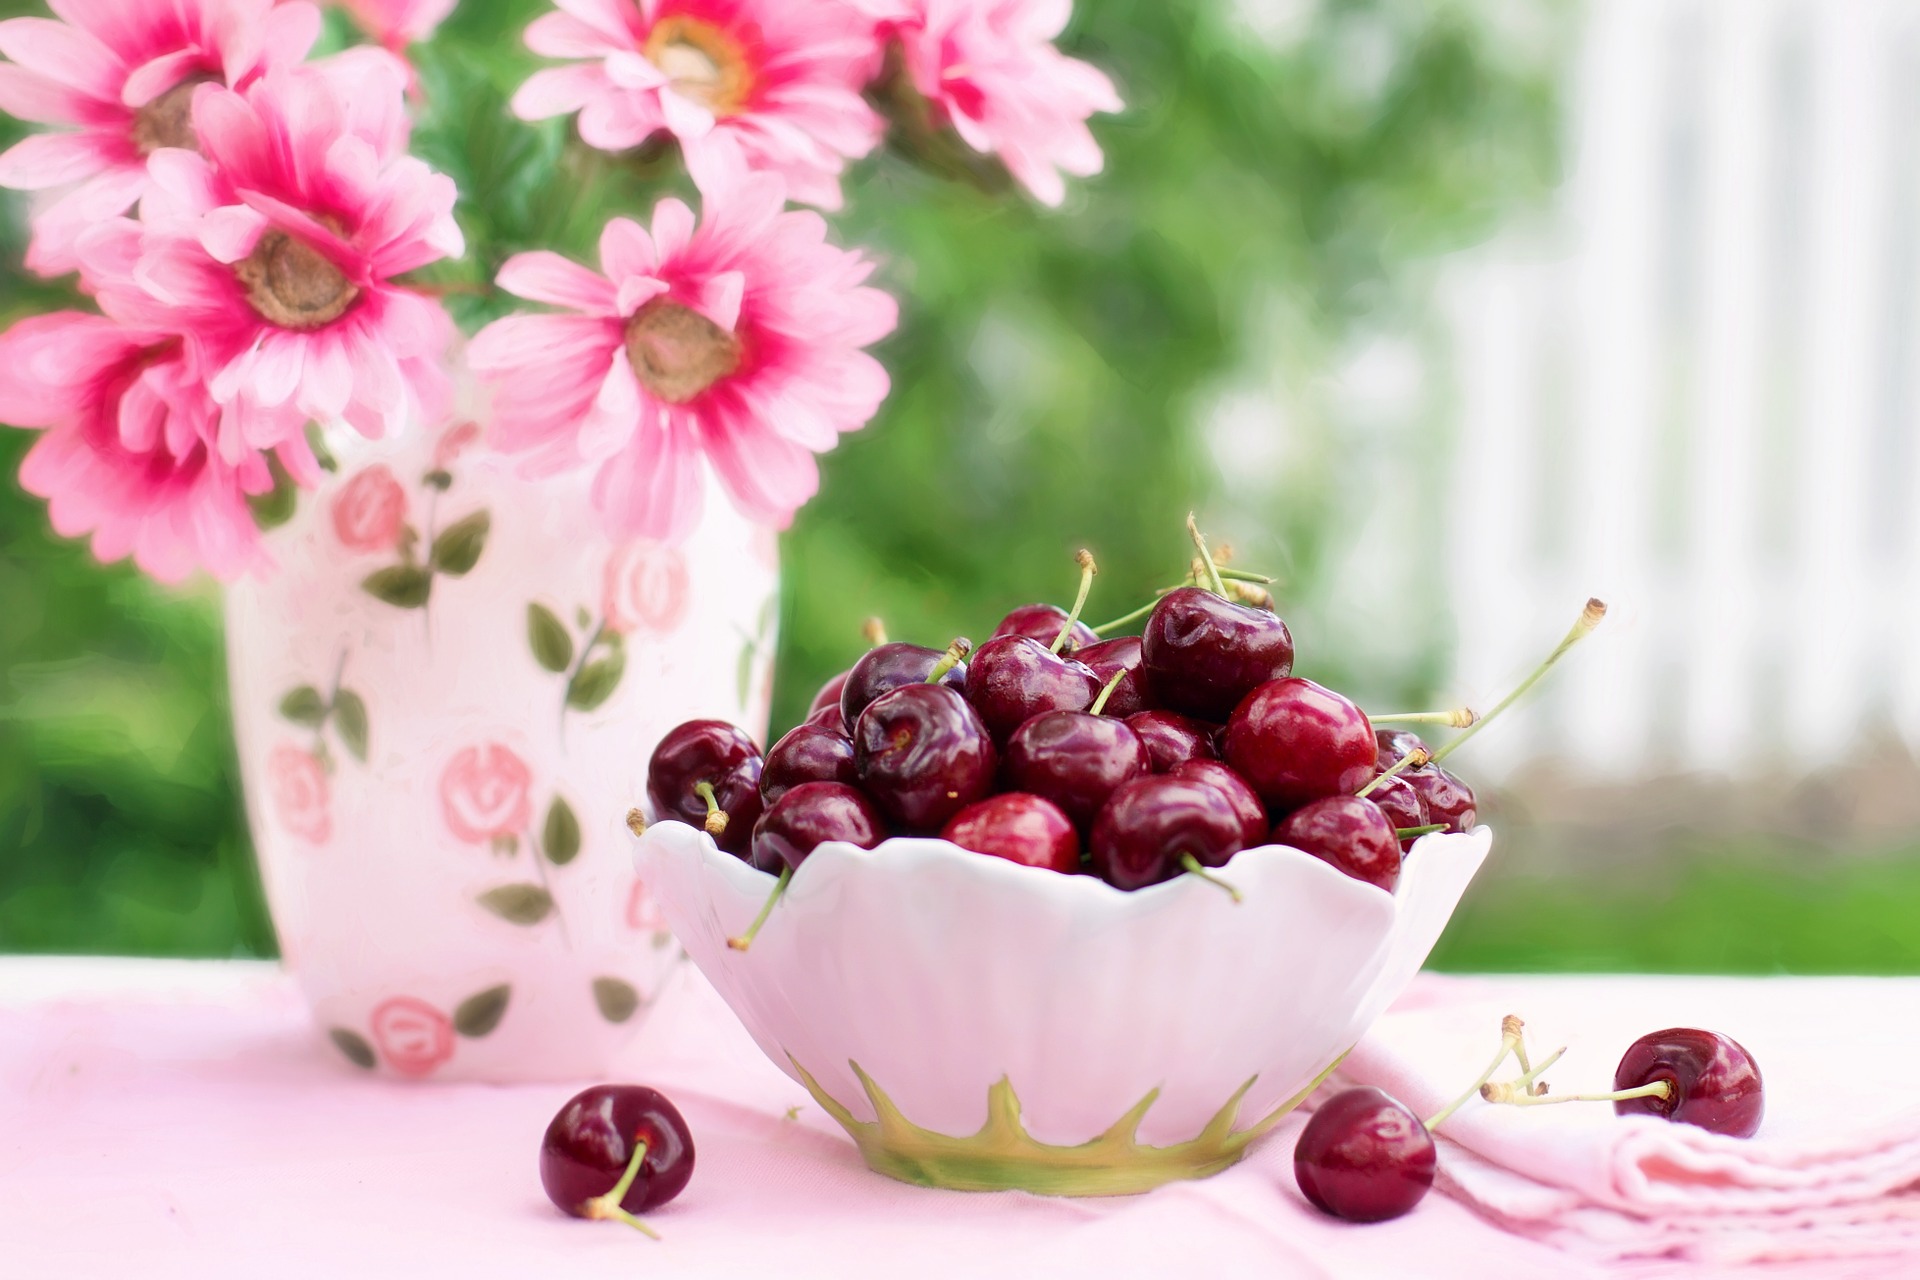 cherries-in-a-bowl-773021_1920_1.jpg